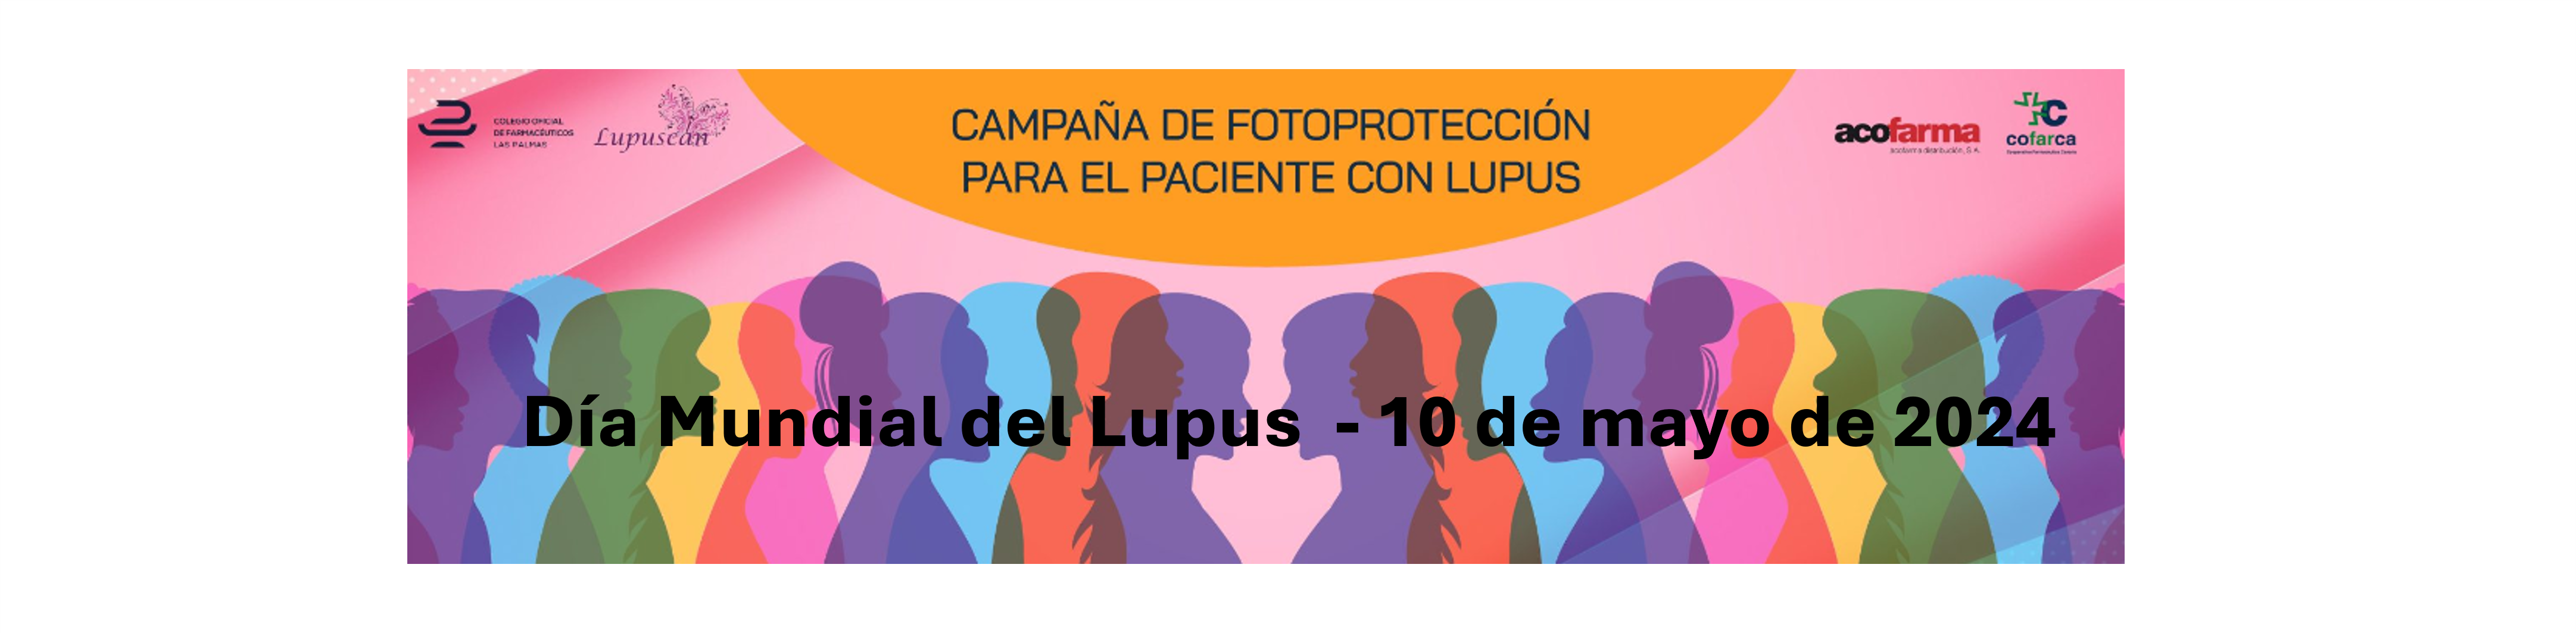 Día Mundial del Lupus - 10 de mayo